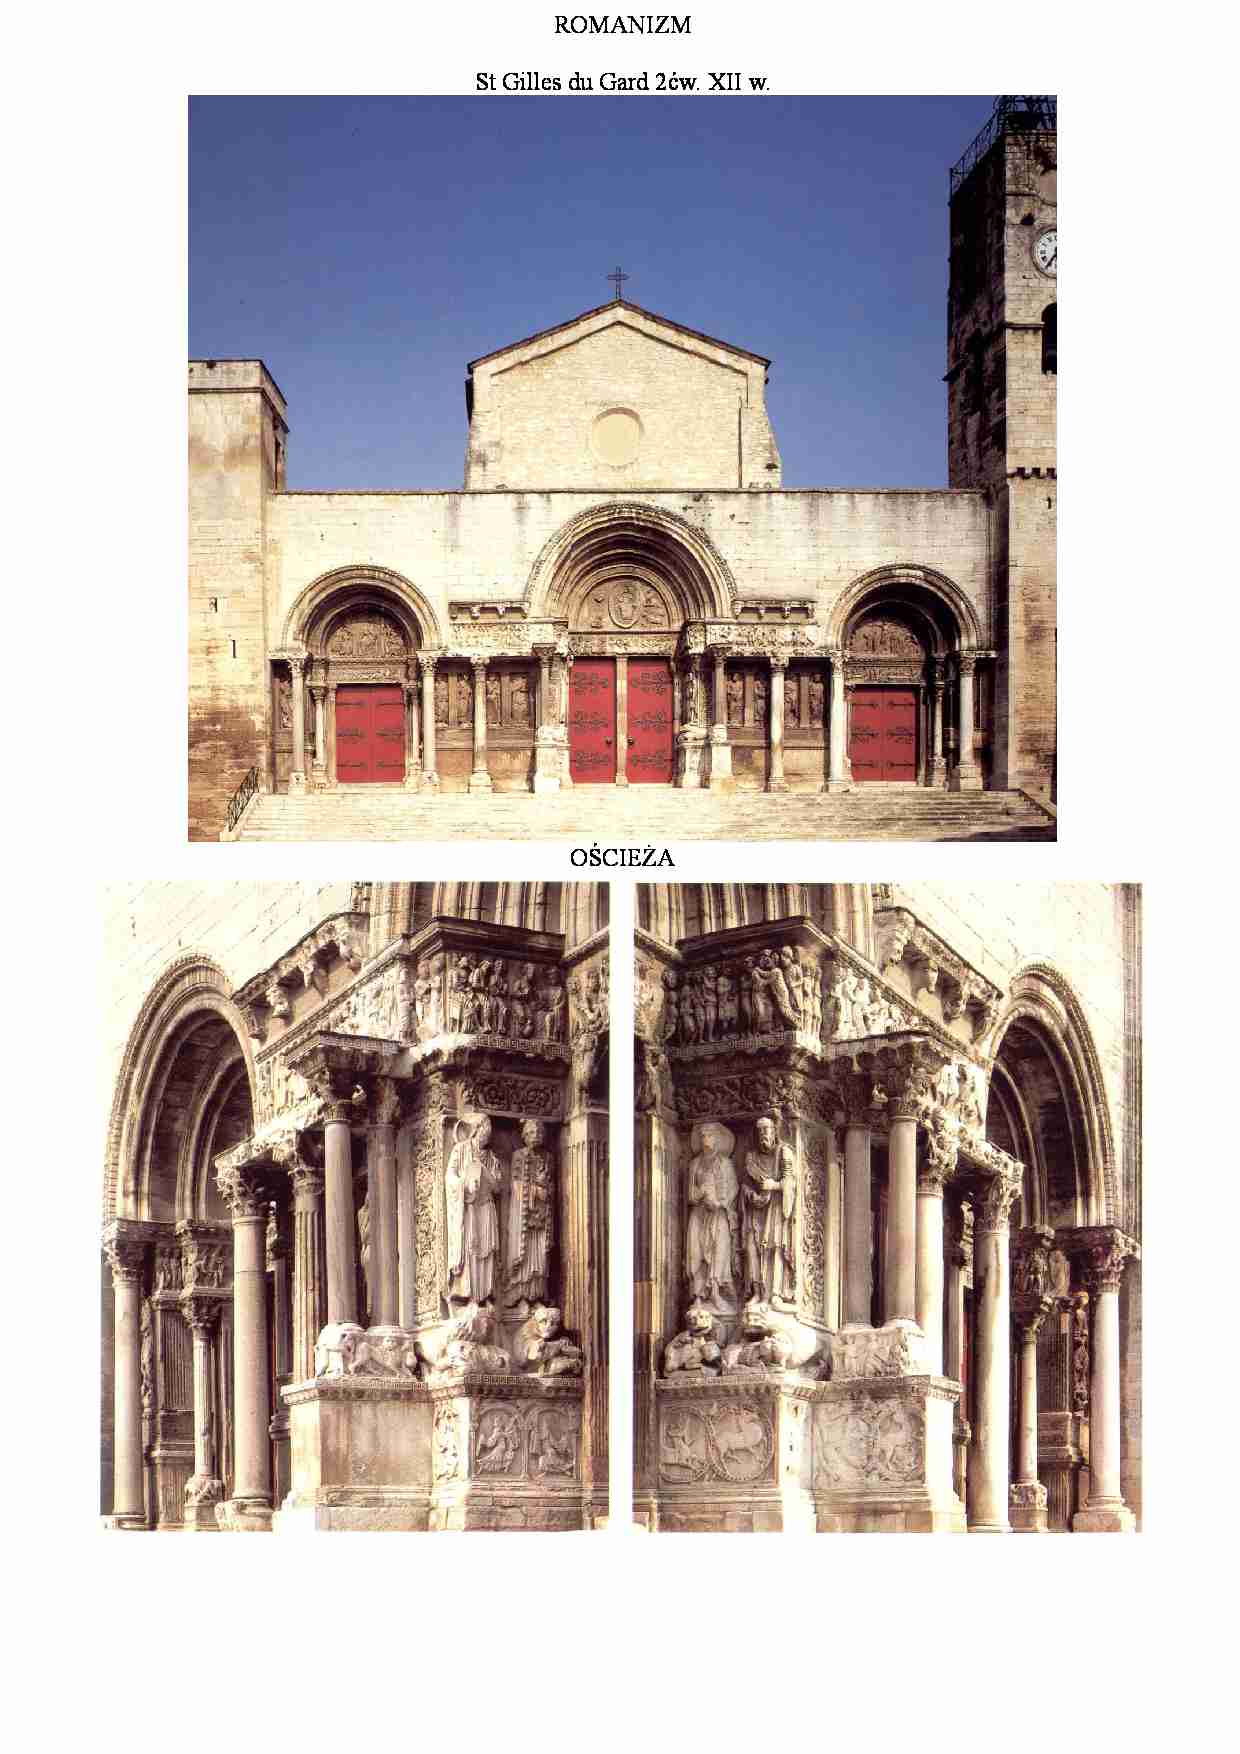 St Gilles du Gard - strona 1